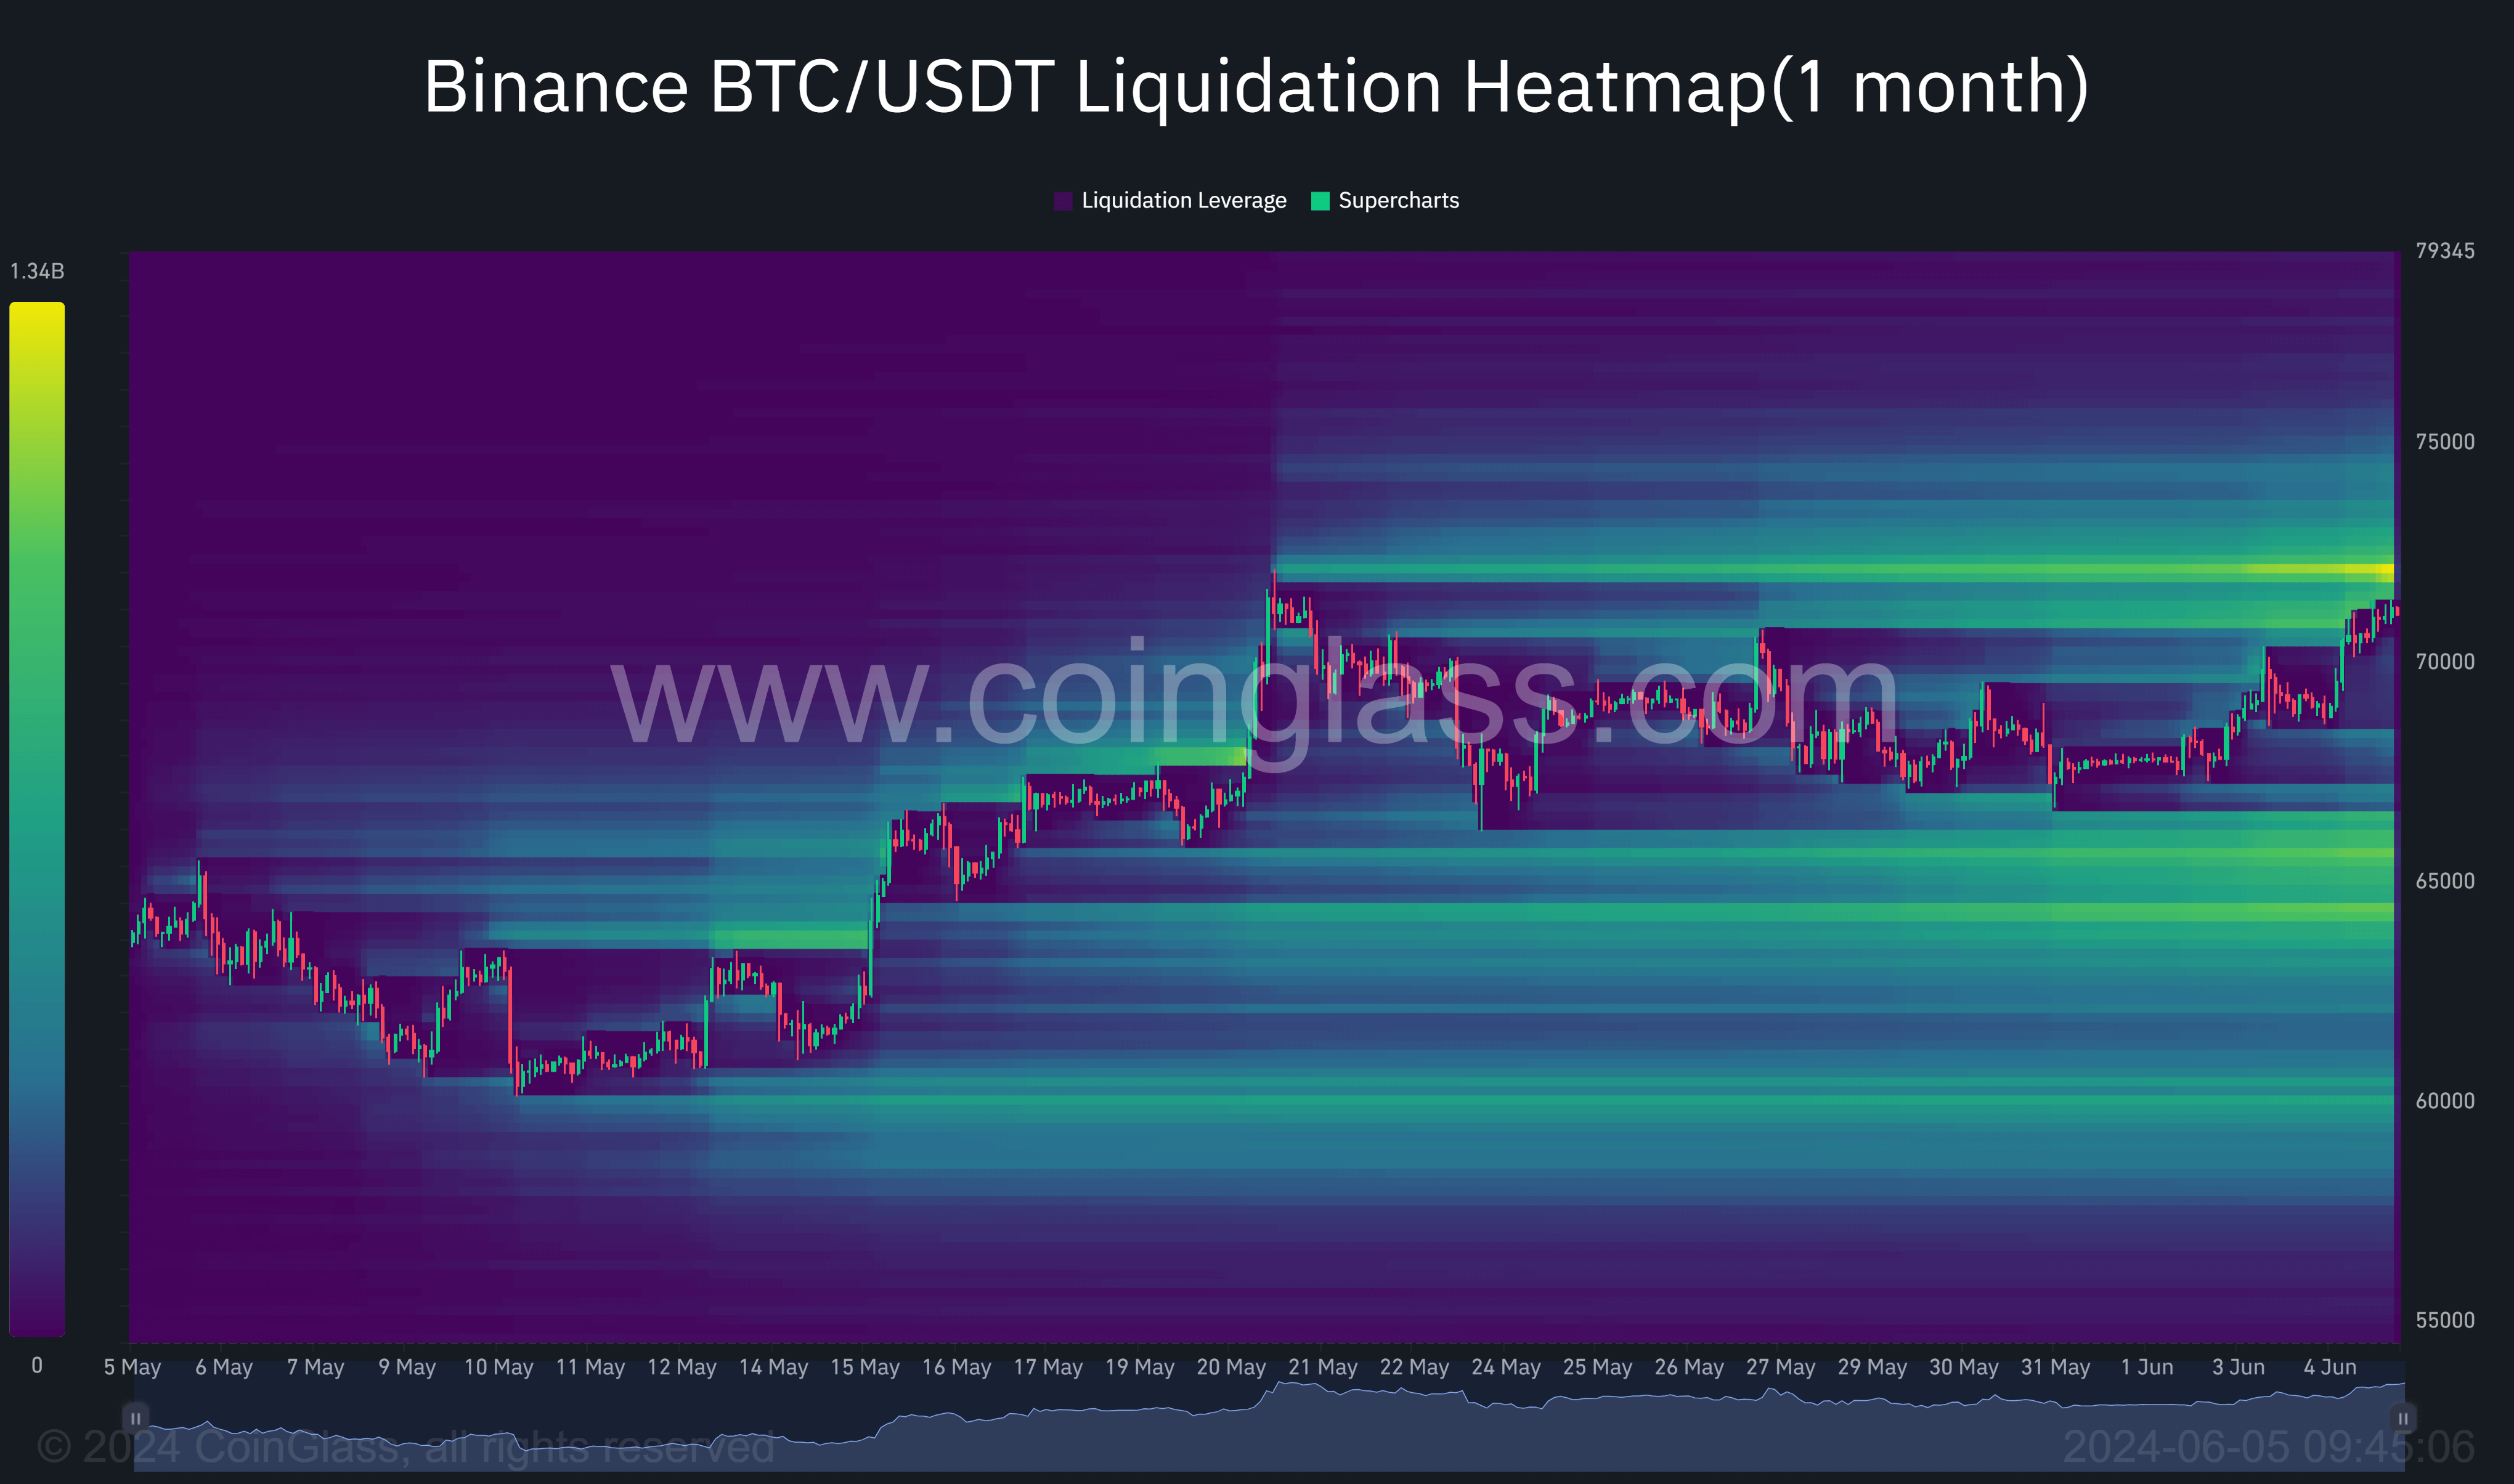 Binance BTC/USDT Liquidation Heatmap (1 Month)